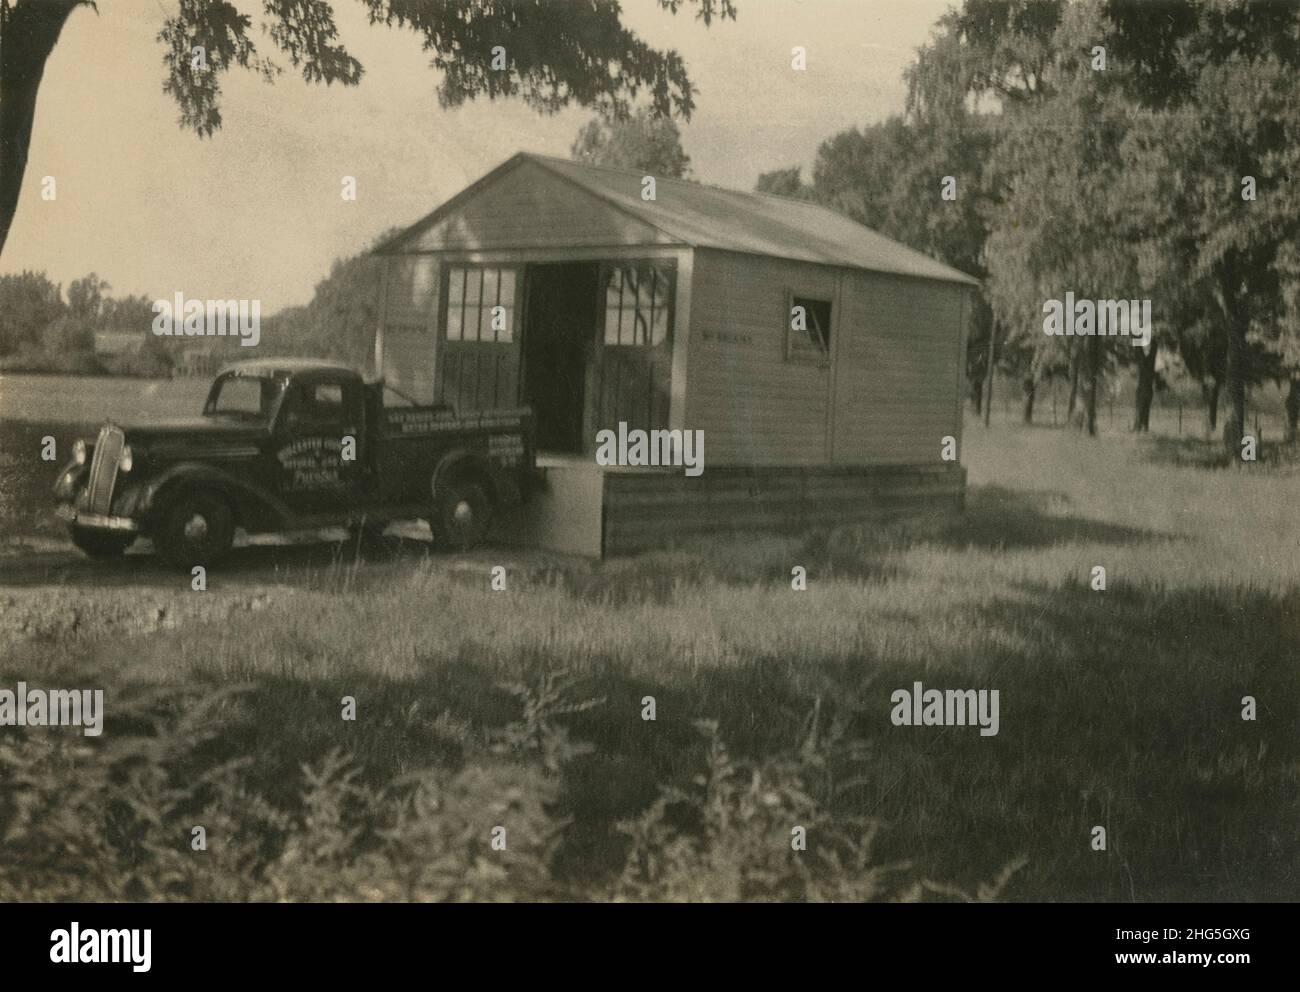 Fotografía antigua de alrededor de 1940, camioneta de recogida respaldada hasta el edificio del taller. El vehículo es posily una camioneta Chevrolet GC Series de media tonelada de 1937. Ubicación exacta desconocida, posiblemente Massachusetts, Estados Unidos. FUENTE: FOTOGRAFÍA ORIGINAL Foto de stock